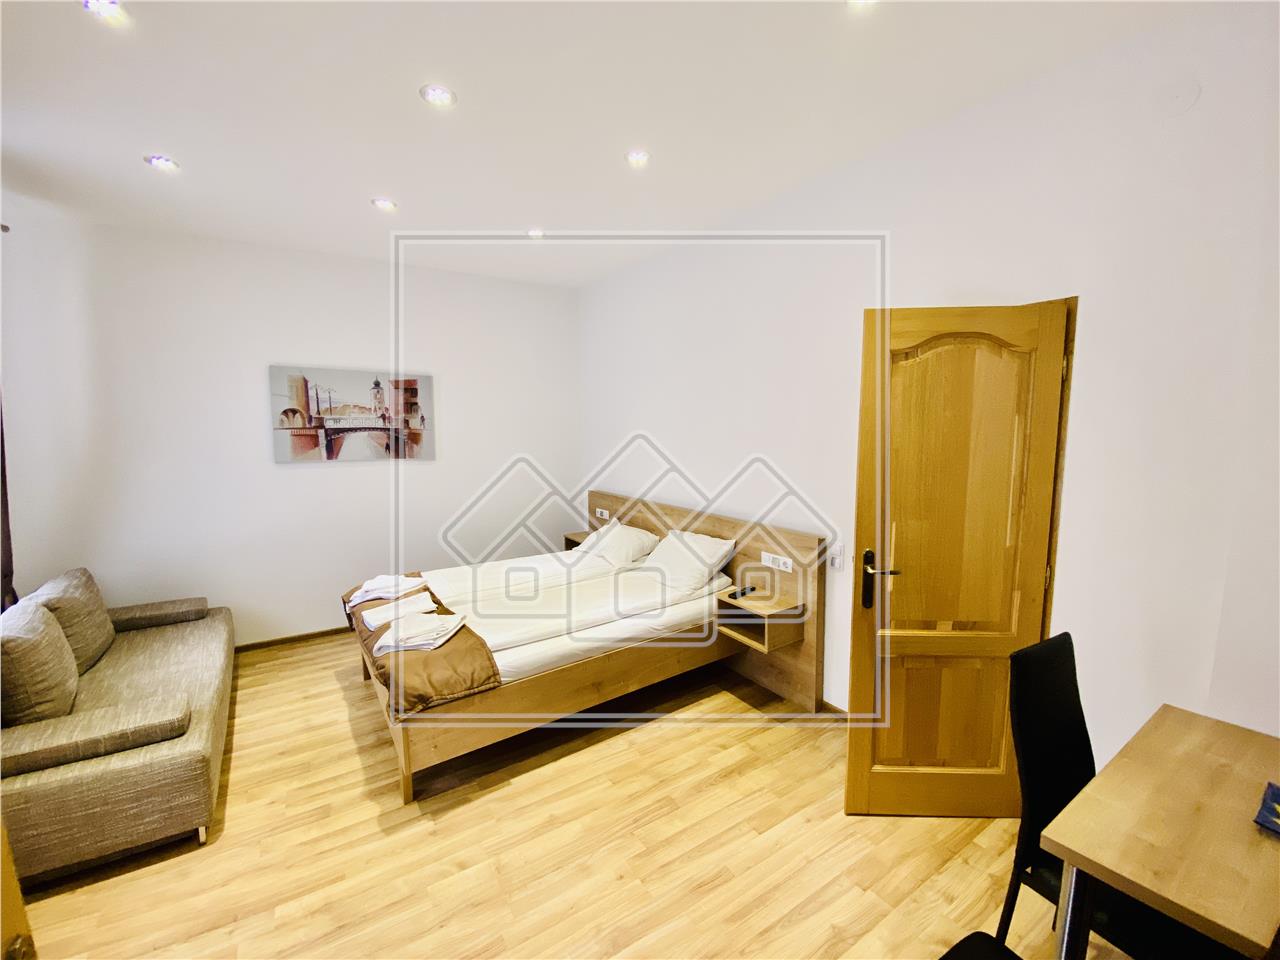 Wohnung zum Verkauf in Sibiu - 187 qm - 4 Zimmer, 4 Badezimmer und Kel